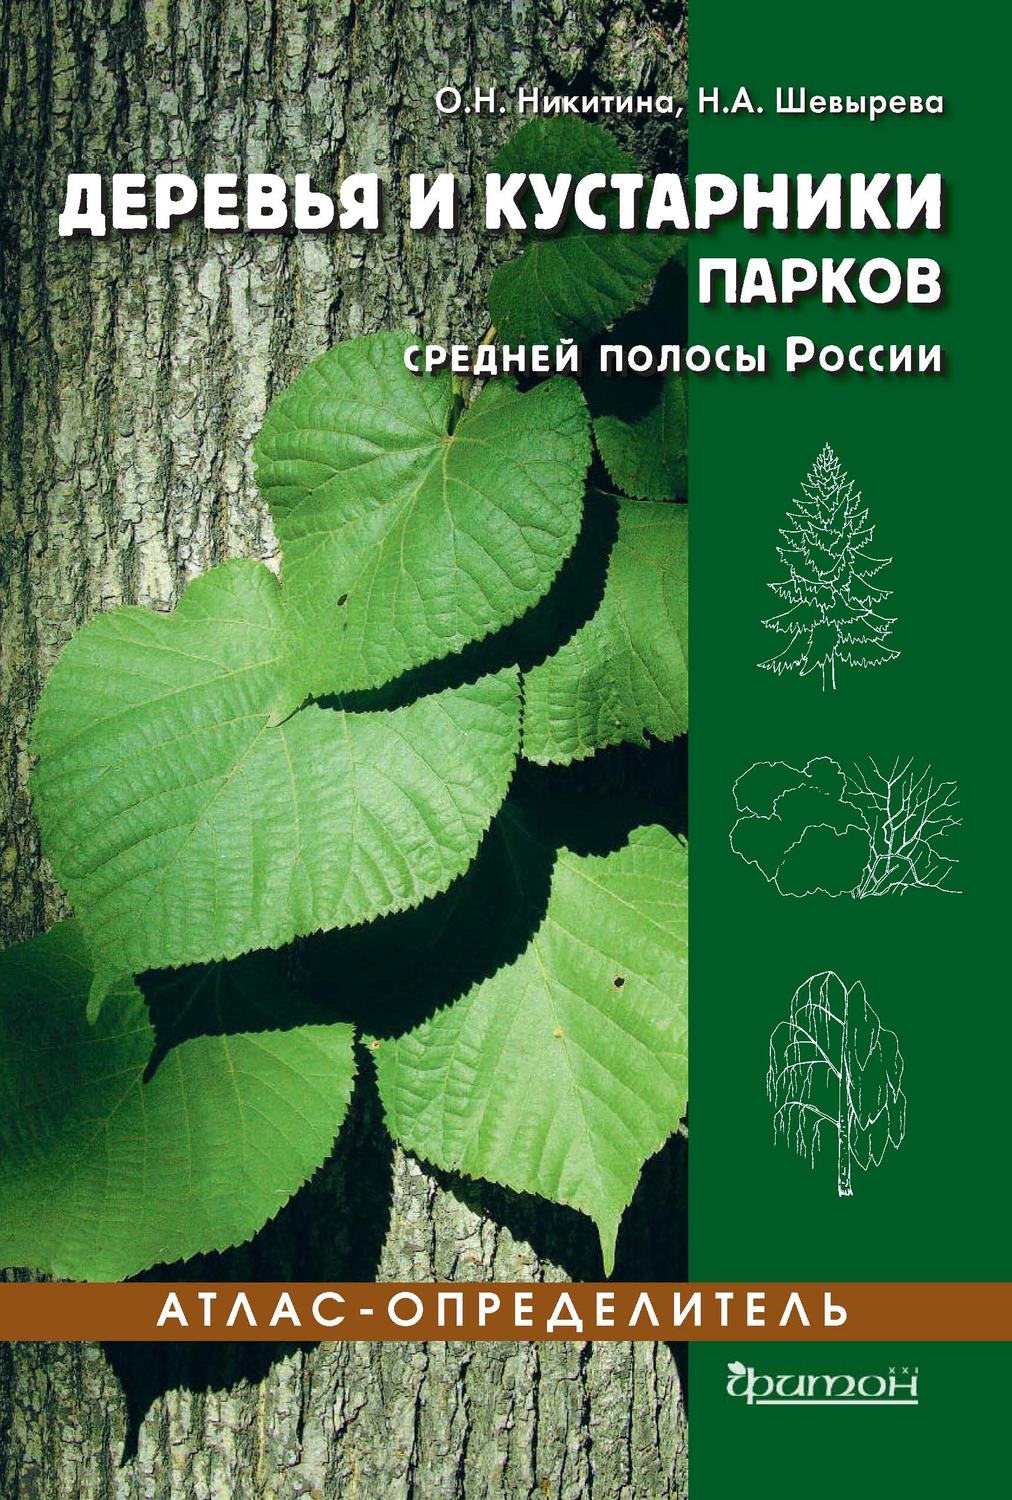 Определитель деревьев и кустарников средней полосы России Киселева